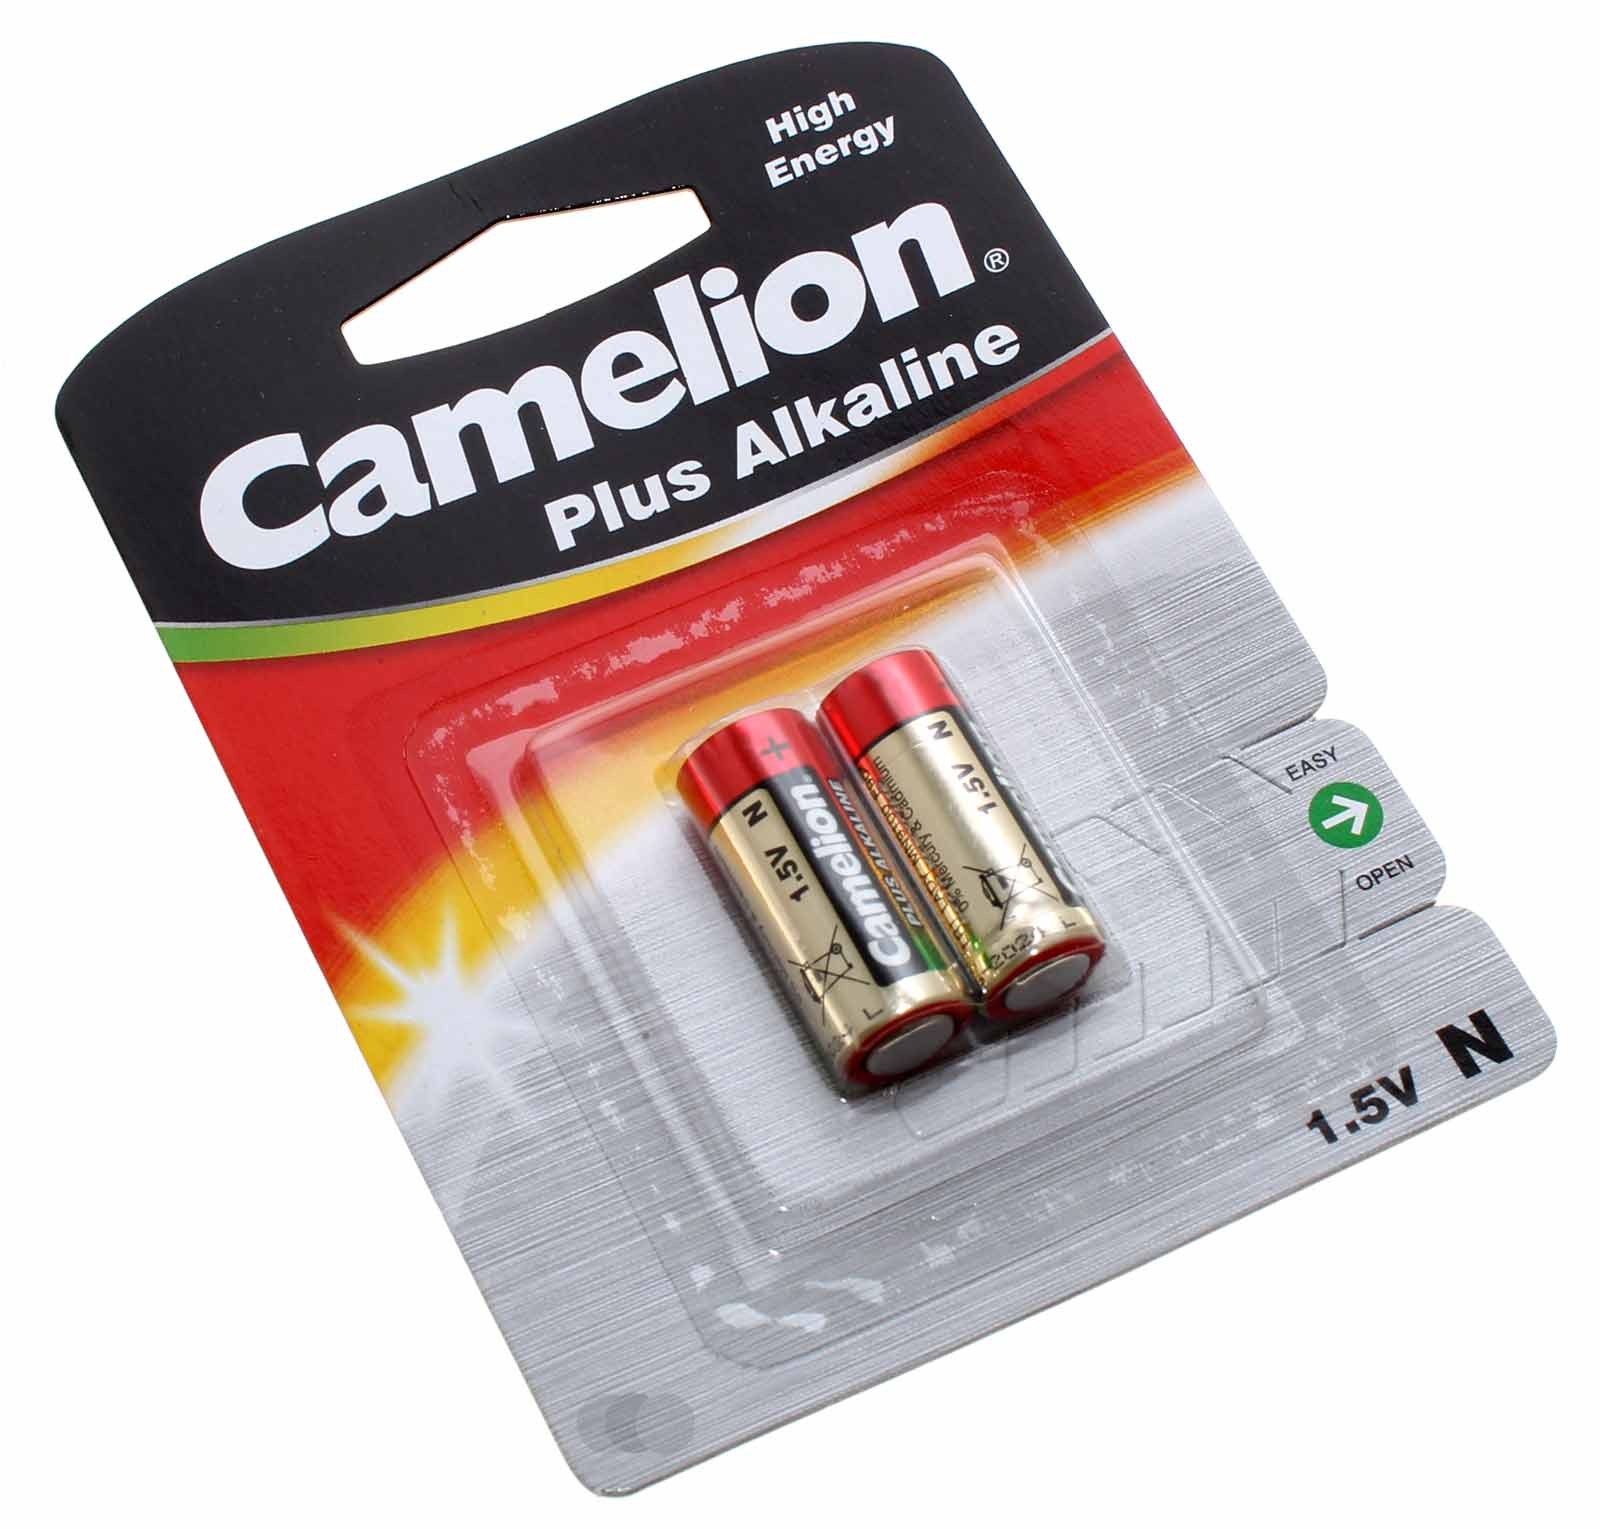 2er-Pack Camelion Plus Alkaline Batterie, Typ LR1, Lady, N mit 1,5 Volt und 945mAh Kapazität